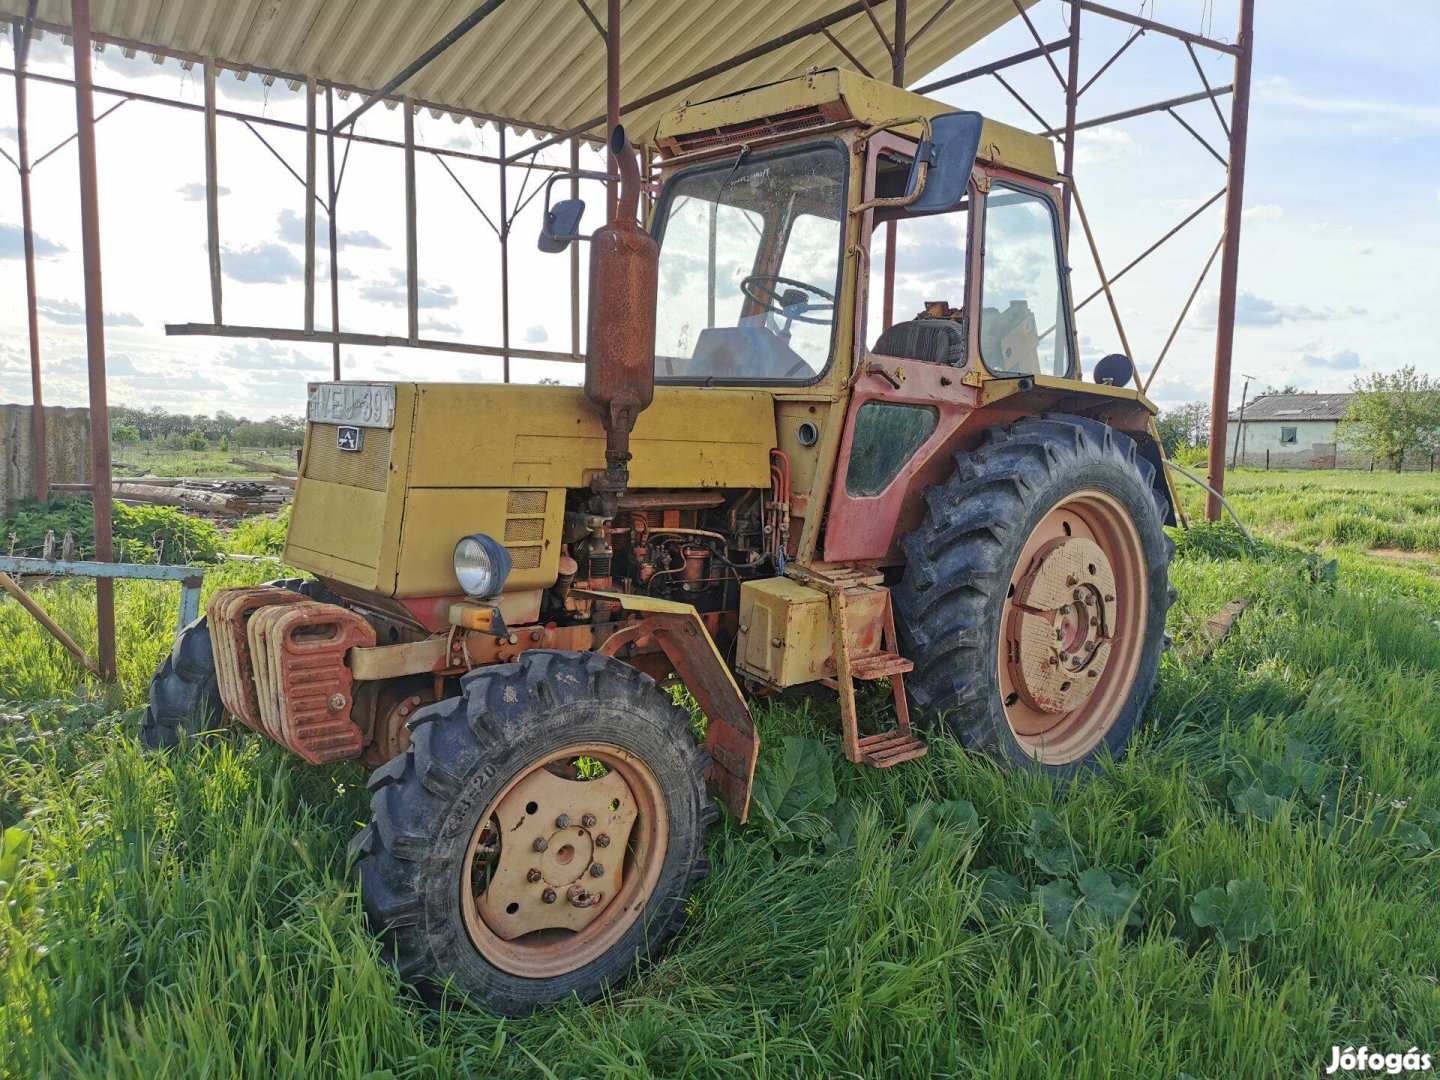 Ltz 55a traktor eladó